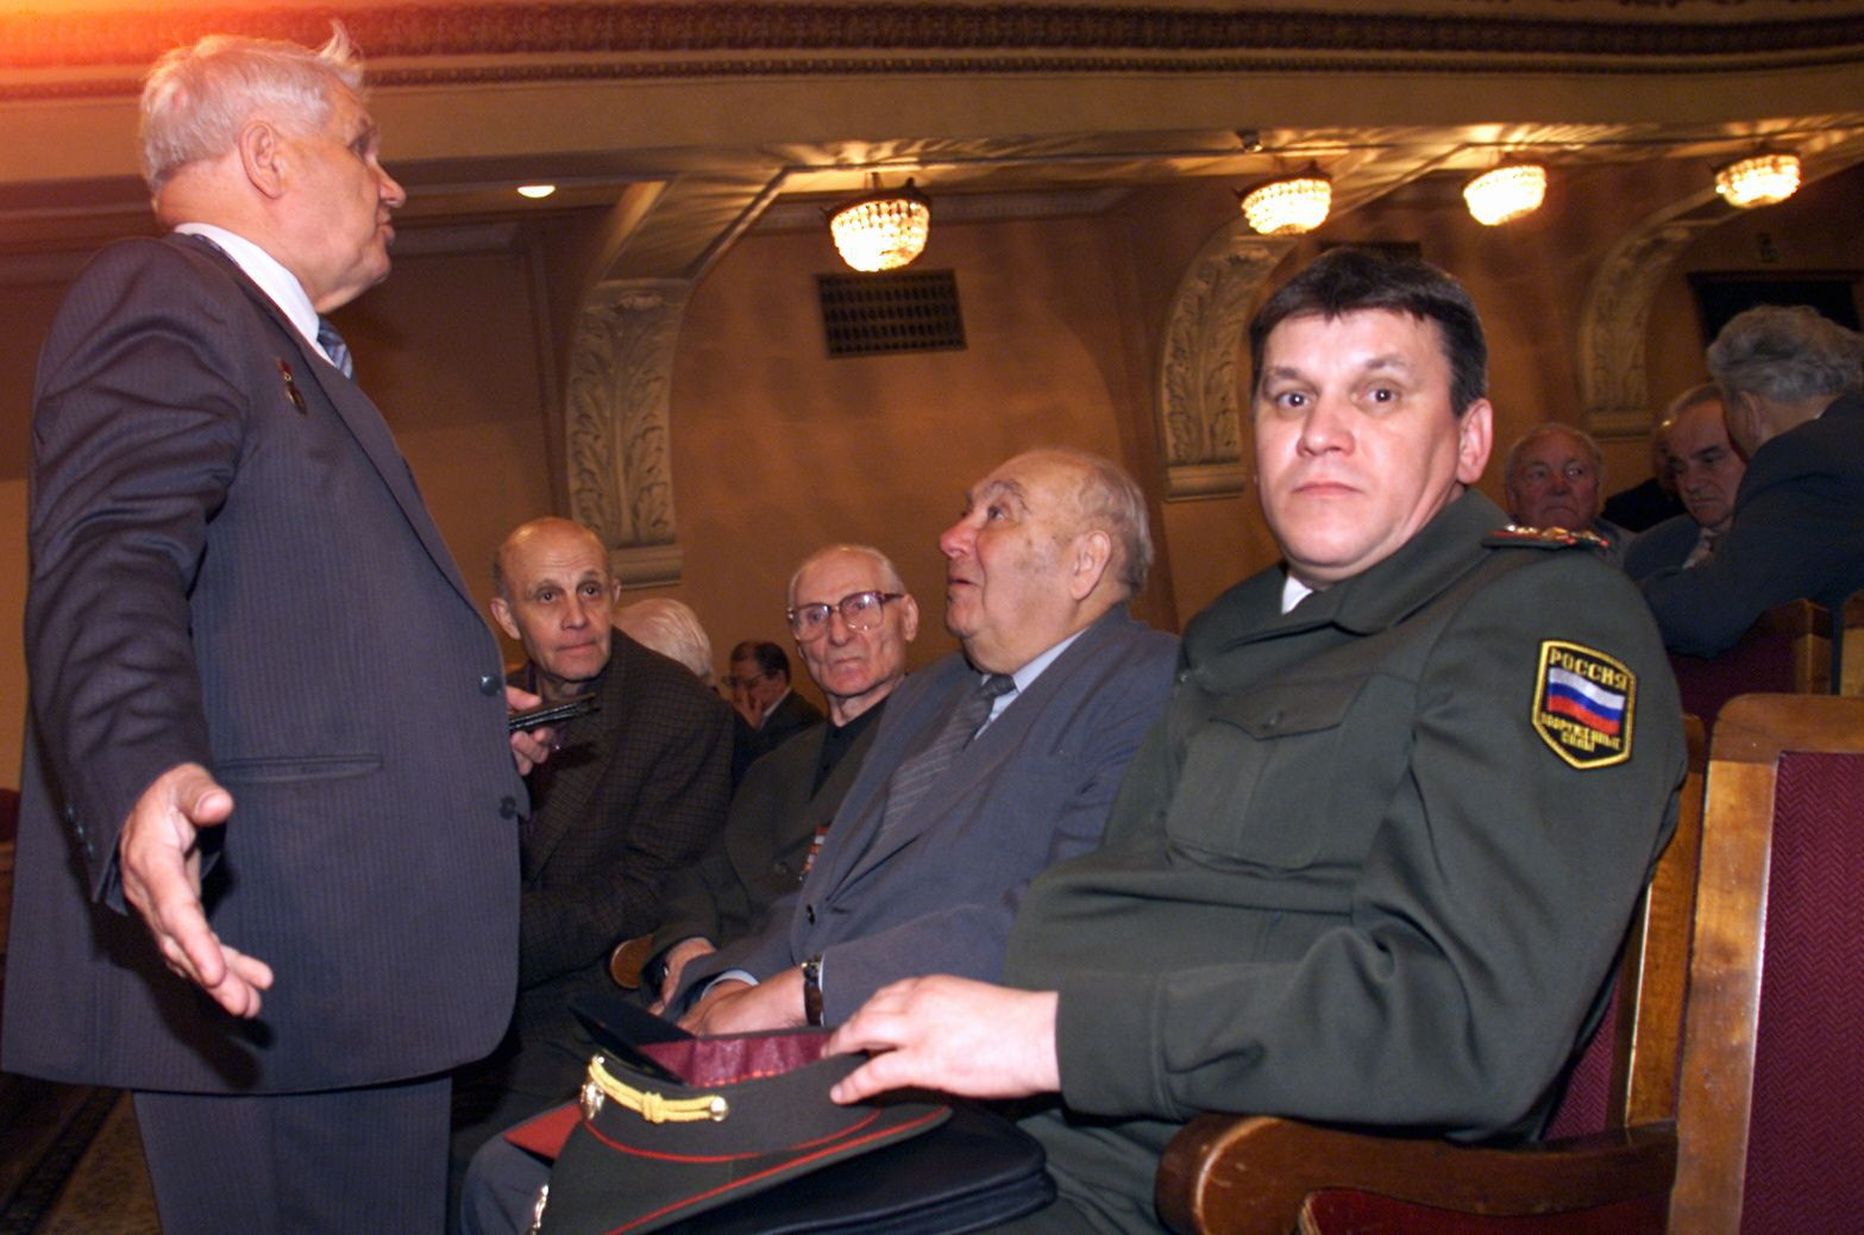 Venemaa sõjaväeatašee Igor Lelin Tallinna Vene kultuurikeskuses 2001. aastal natsi-Saksamaa NSV Liidule kallaletungi 60. aastapäevale pühendatud konverentsil.